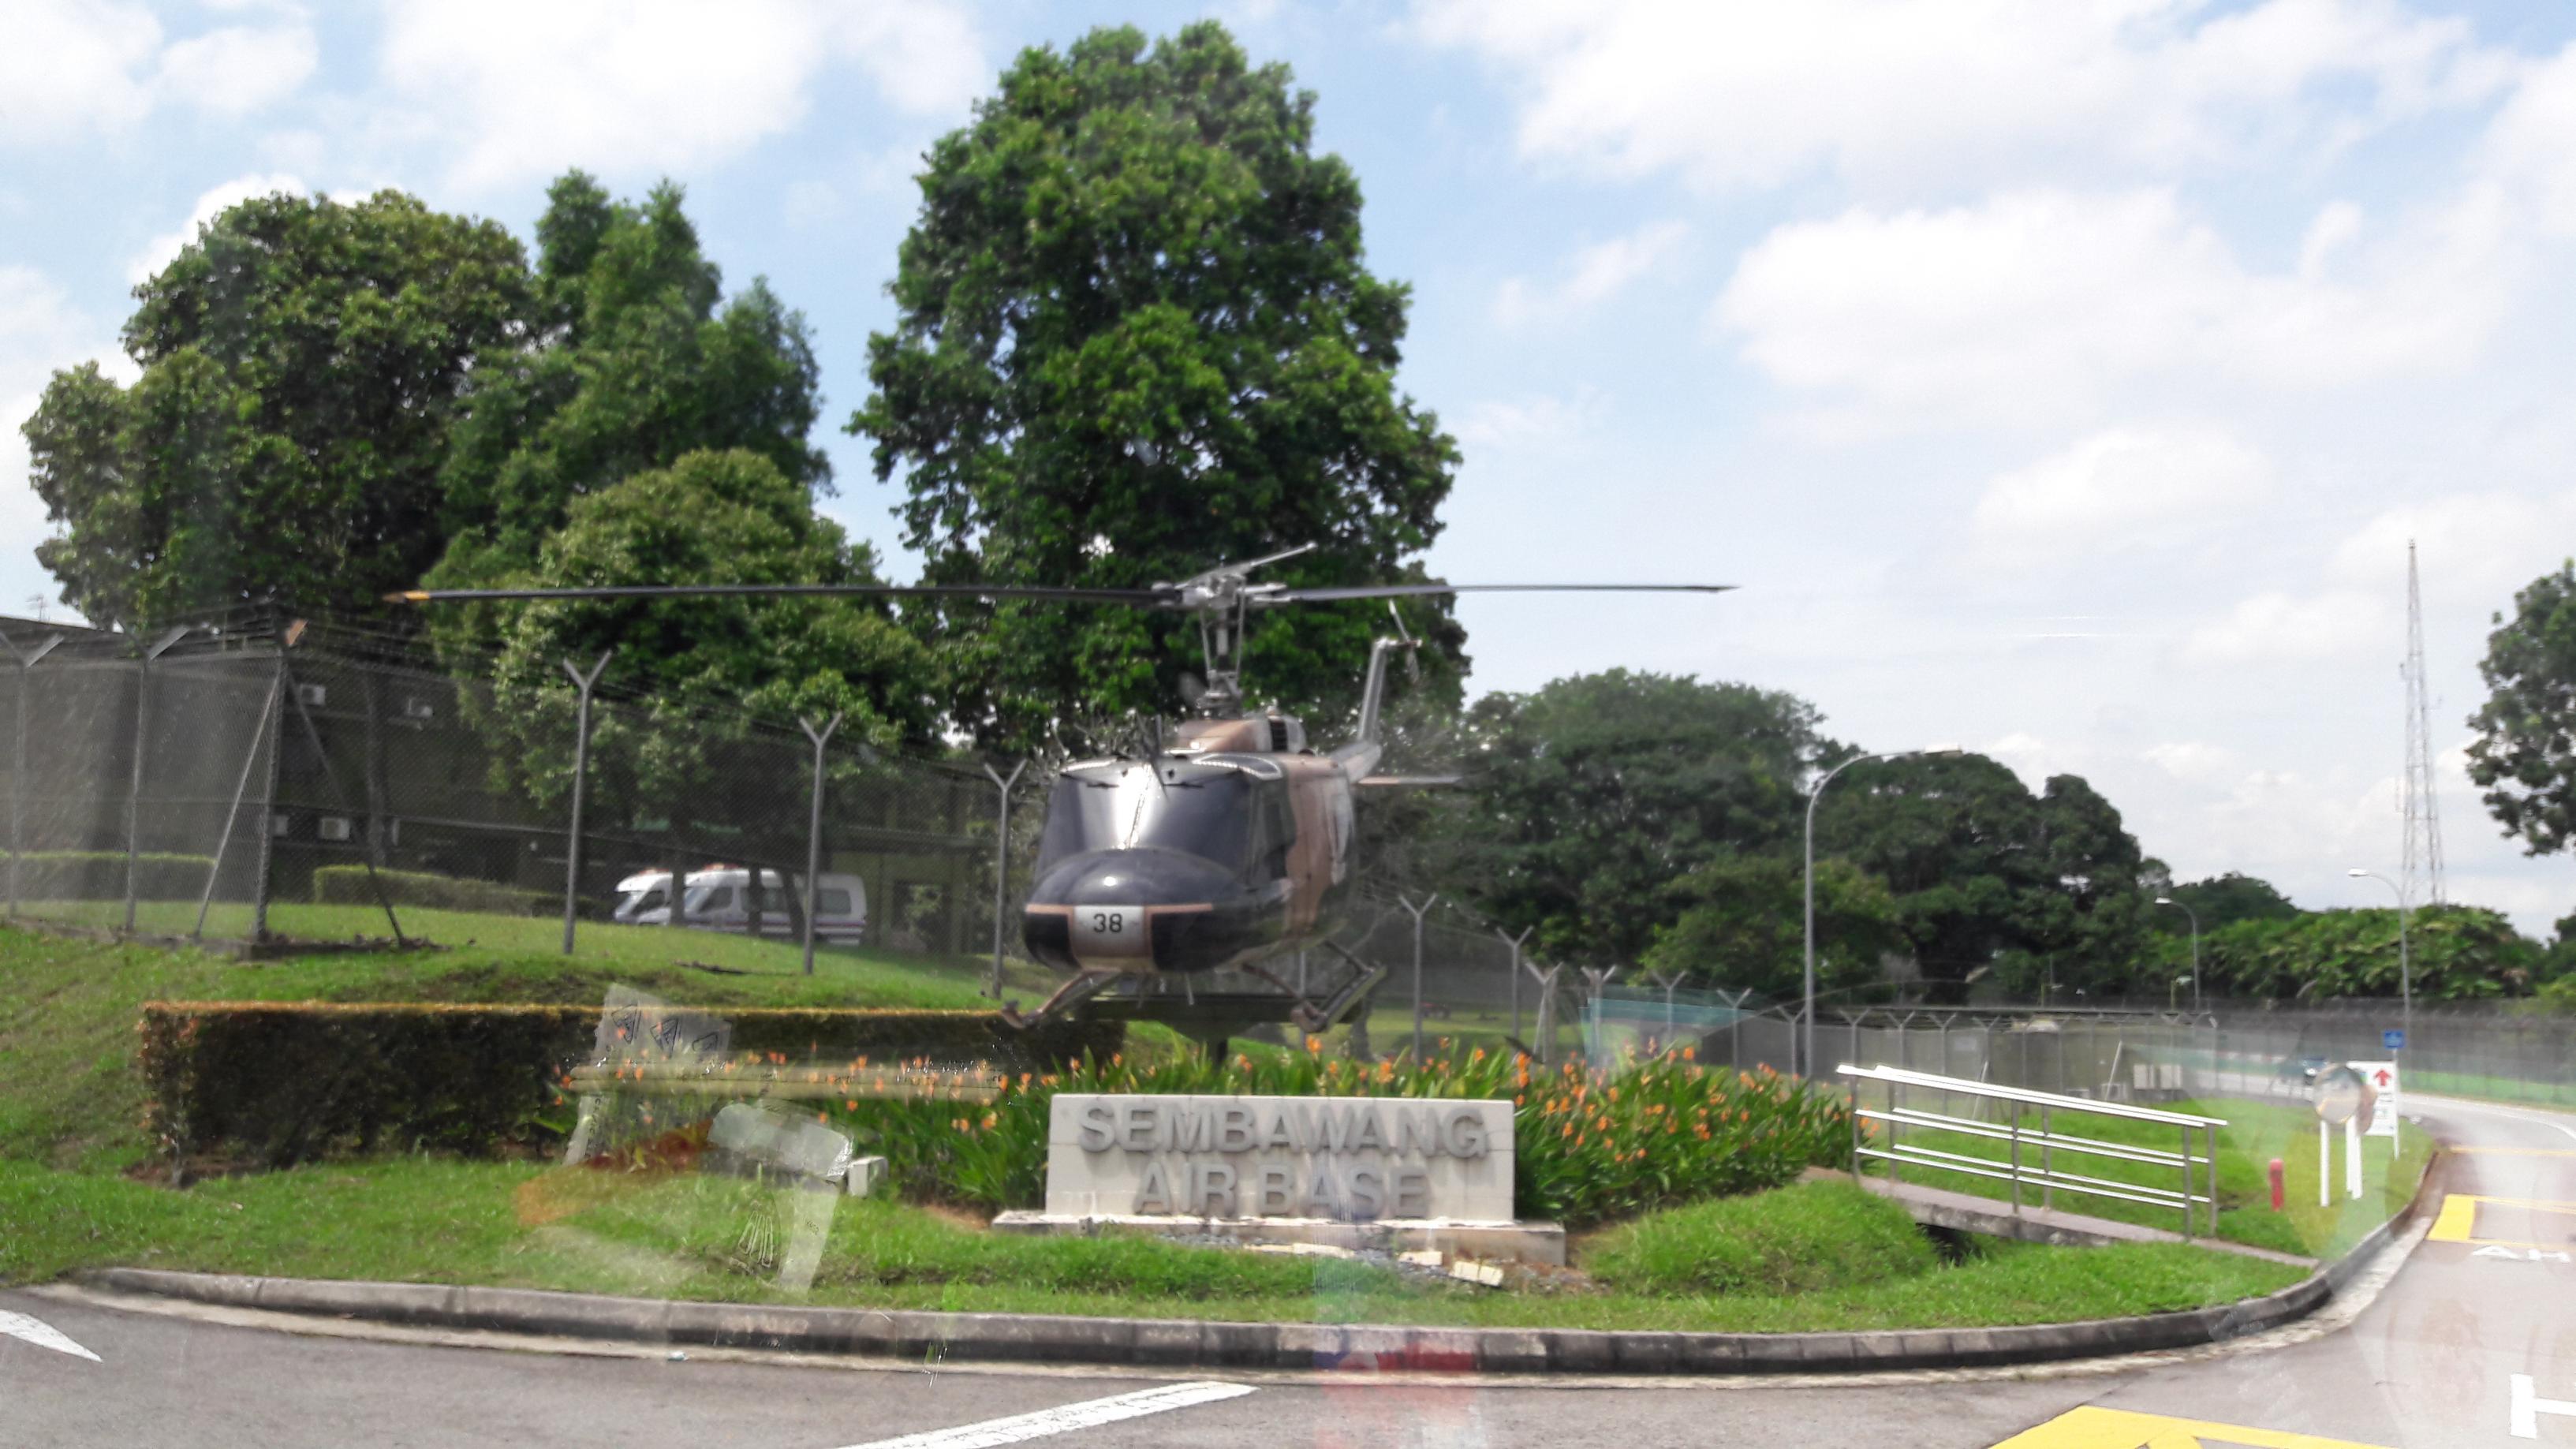 Naam: UH-1 , Sembawang Air Base..jpg
Bekeken: 442
Grootte: 518,1 KB